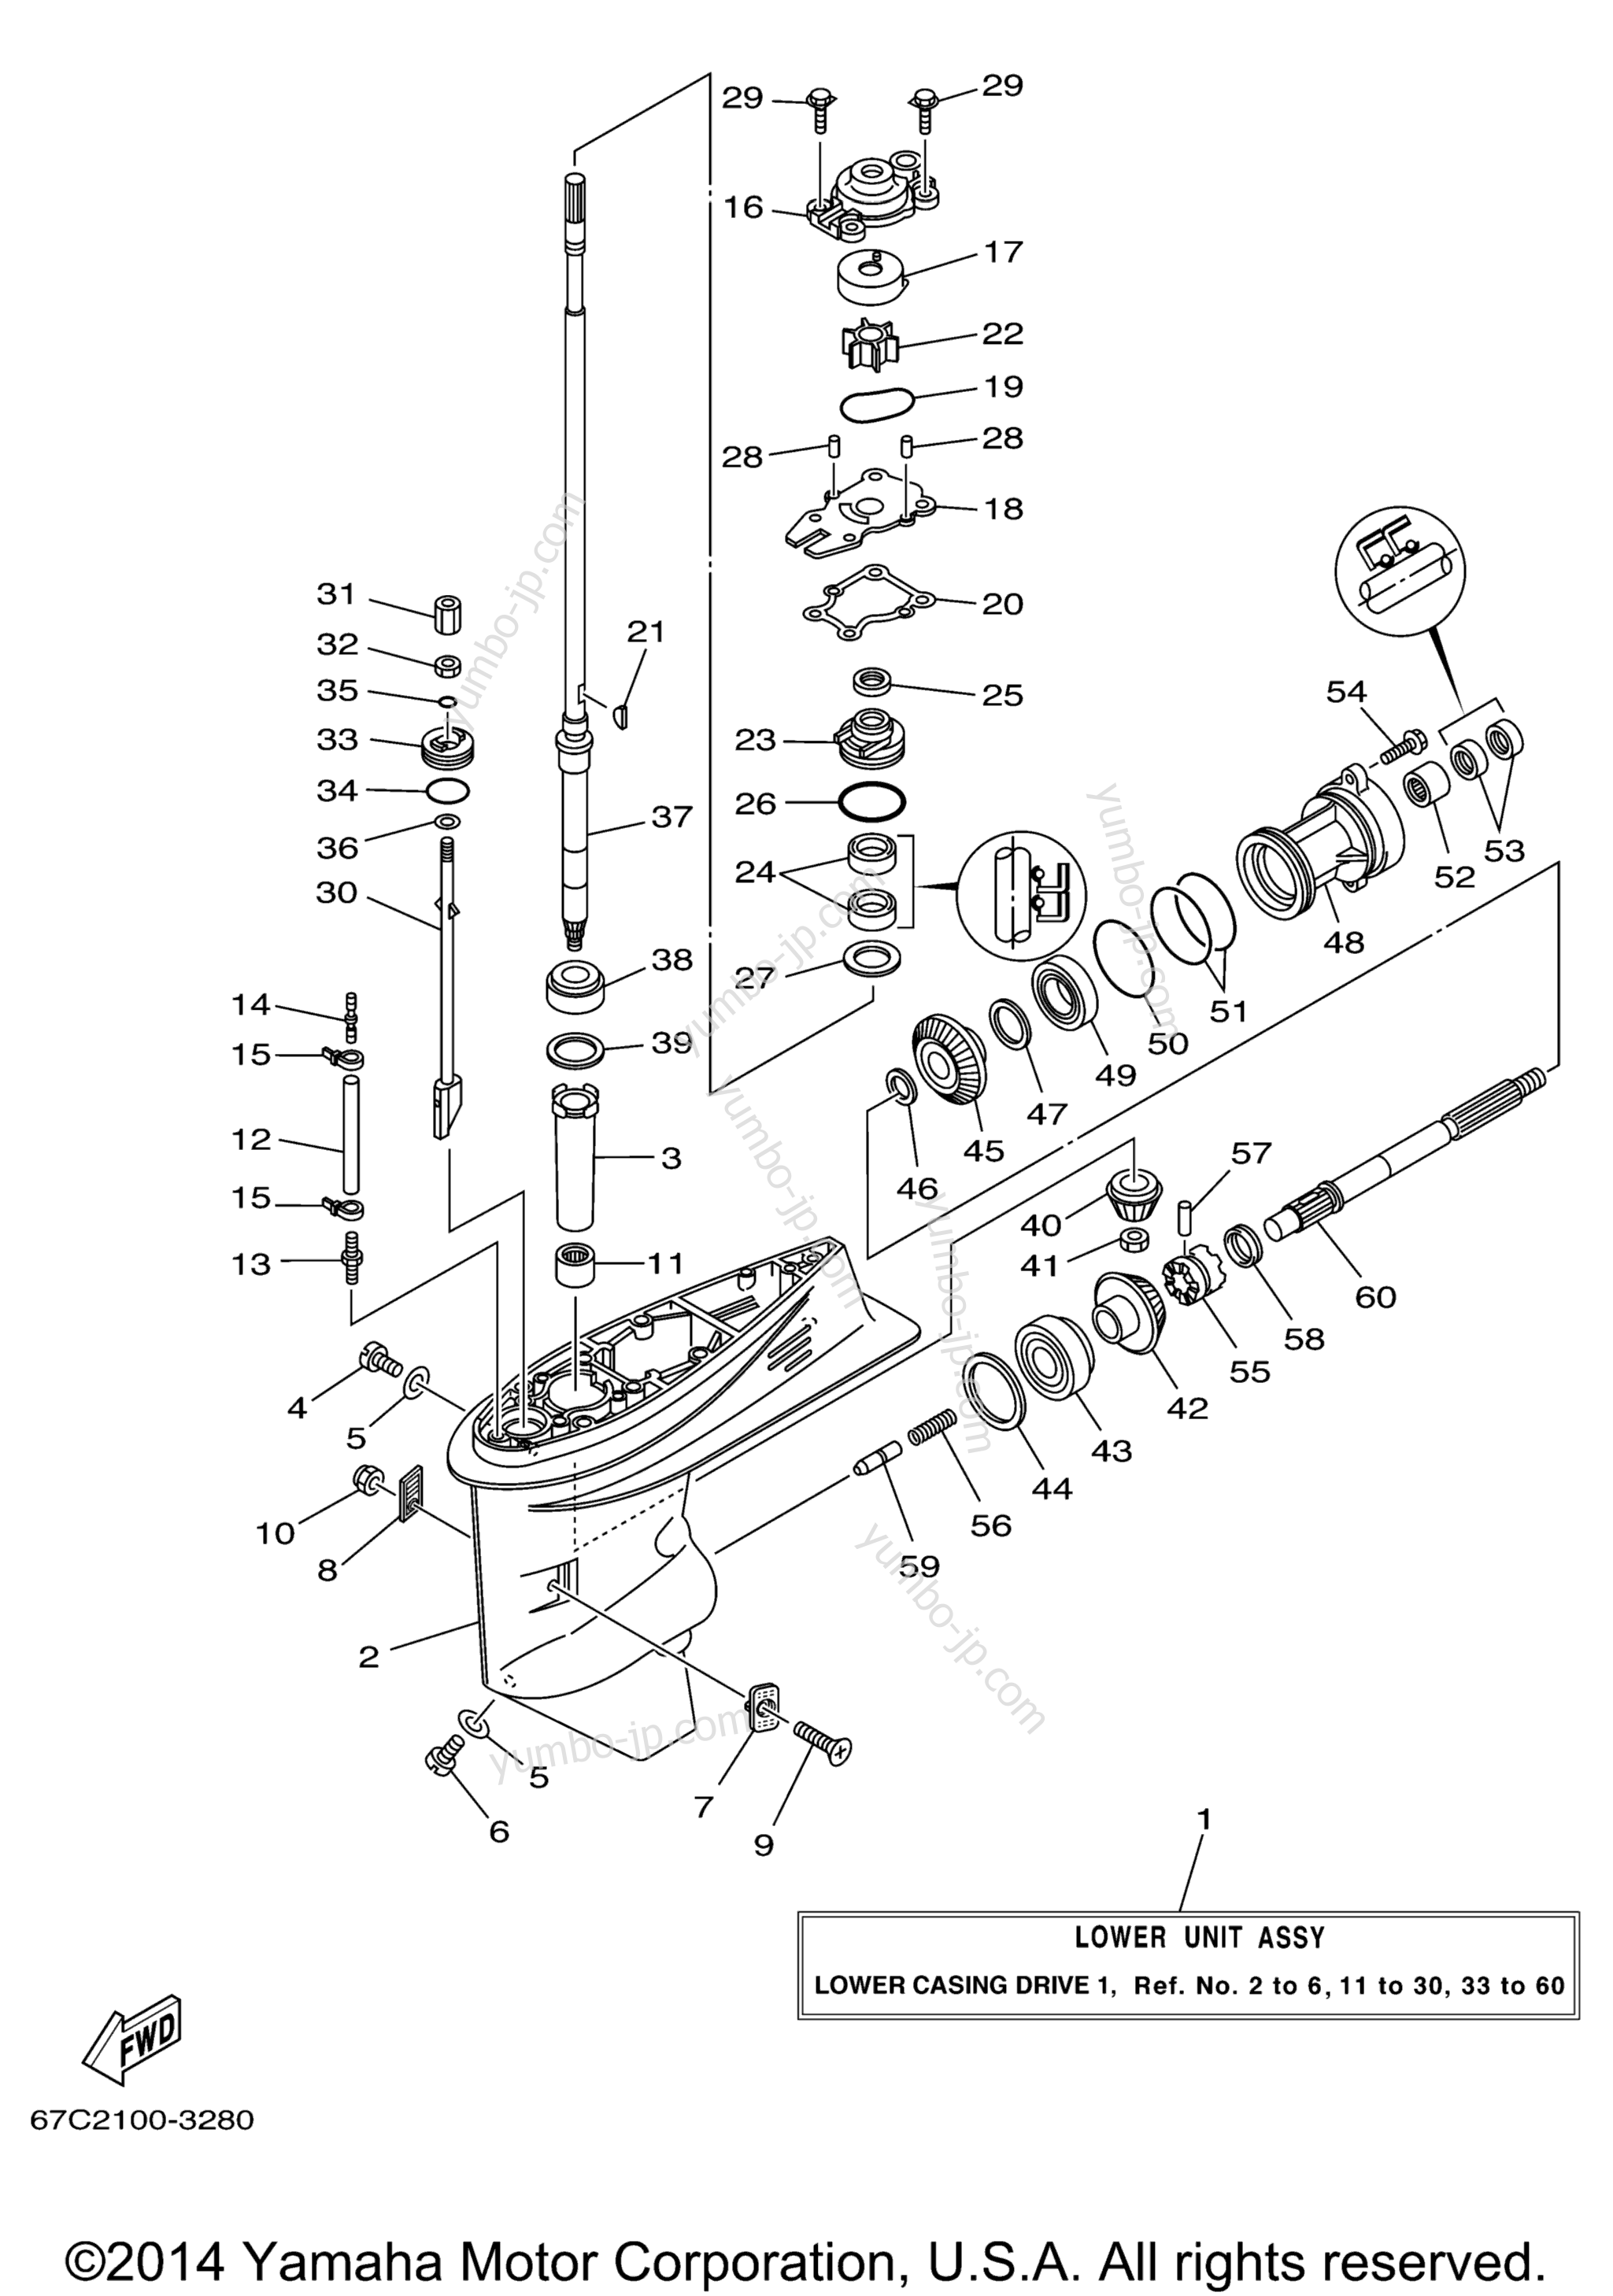 Lower Casing Drive 1 для лодочных моторов YAMAHA F40TLRD_MSHD_MLHD_MJHD_ELRD (F30TLRD) 2005 г.